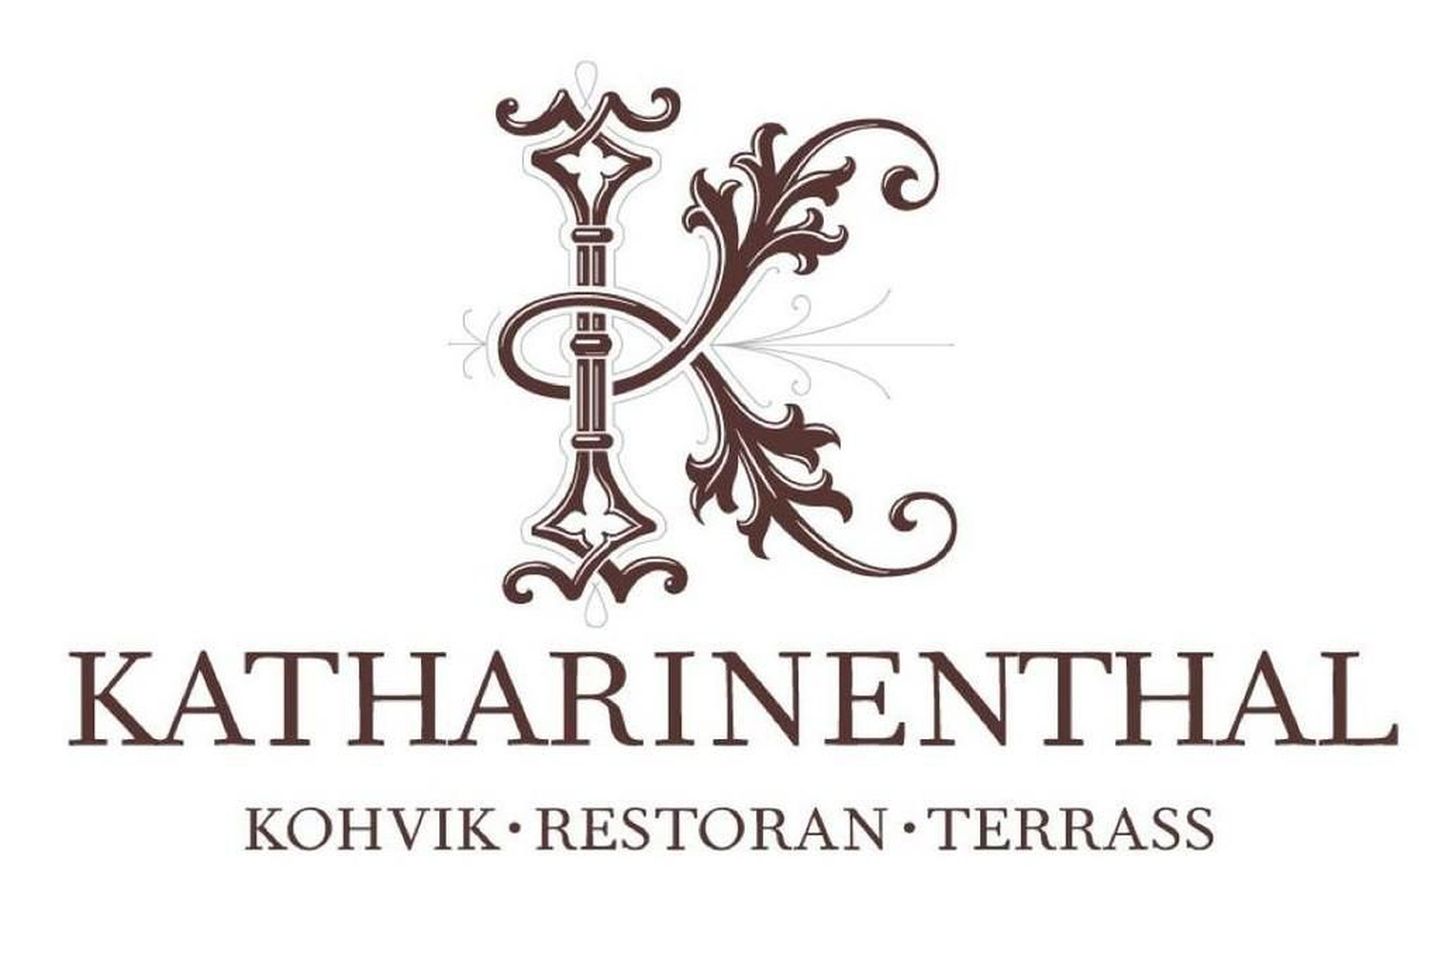 Katharinenthali kohvik